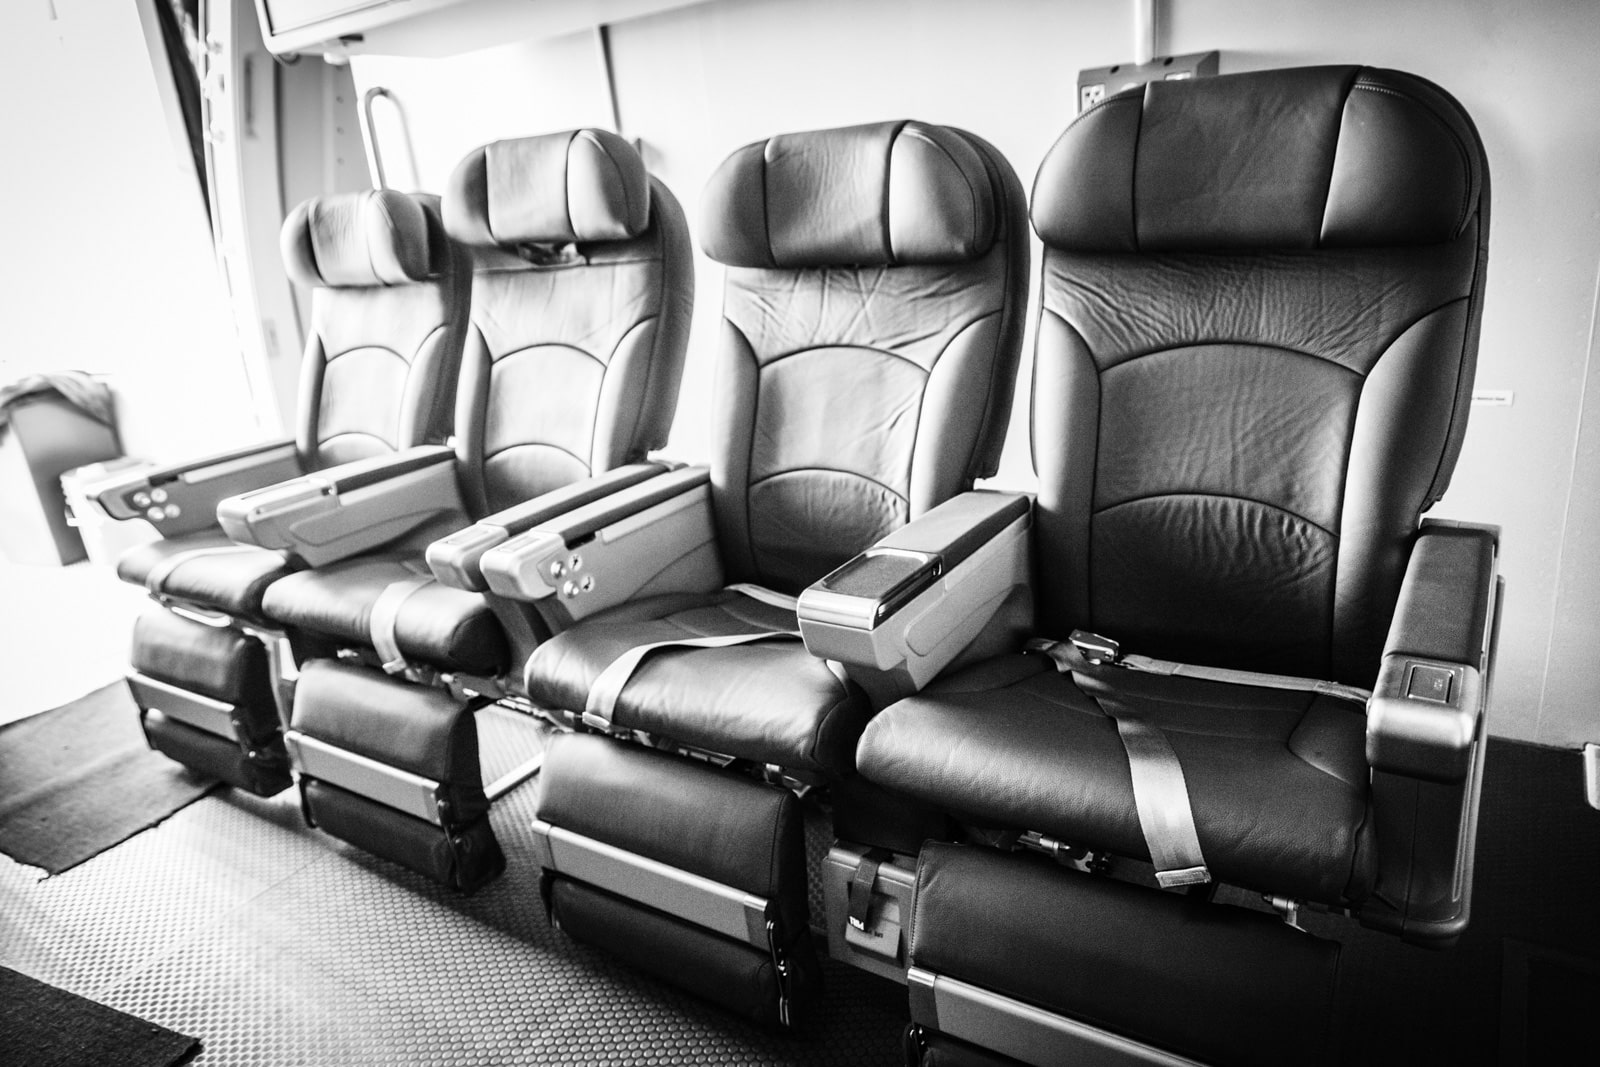 Sitzreihe einer Boeing